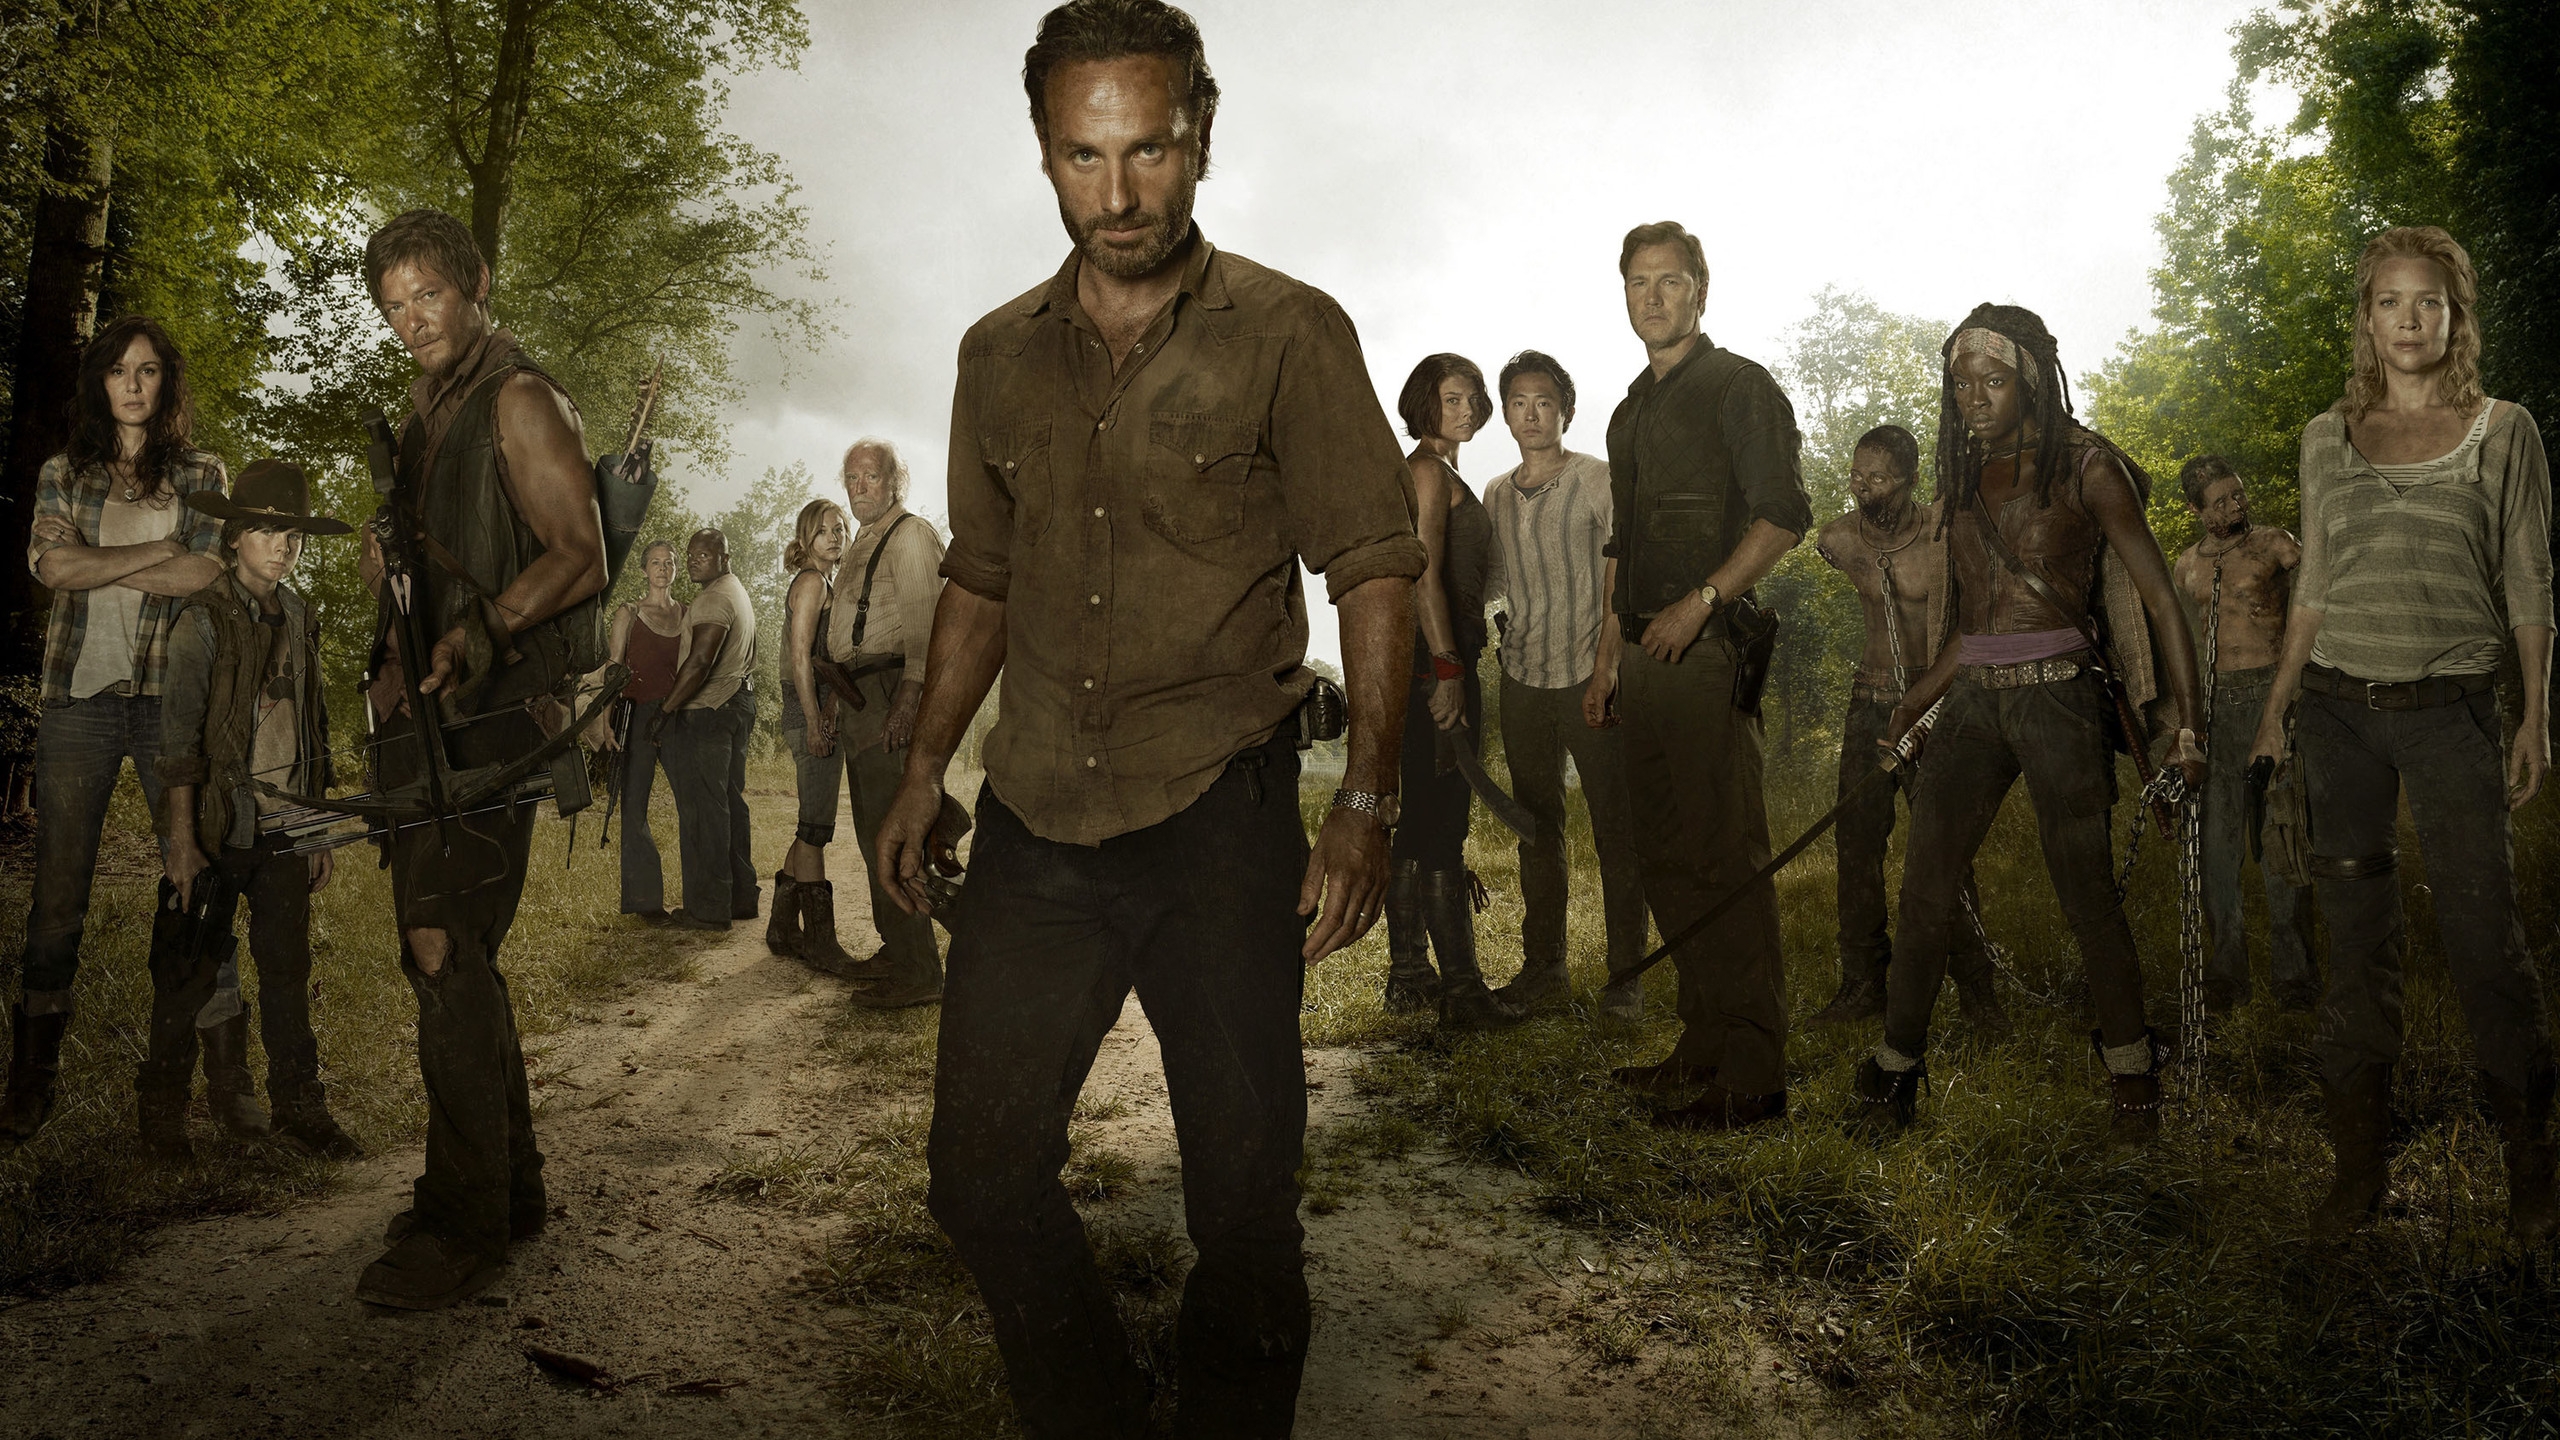 The Walking Dead Full Cast for 2560x1440 HDTV resolution